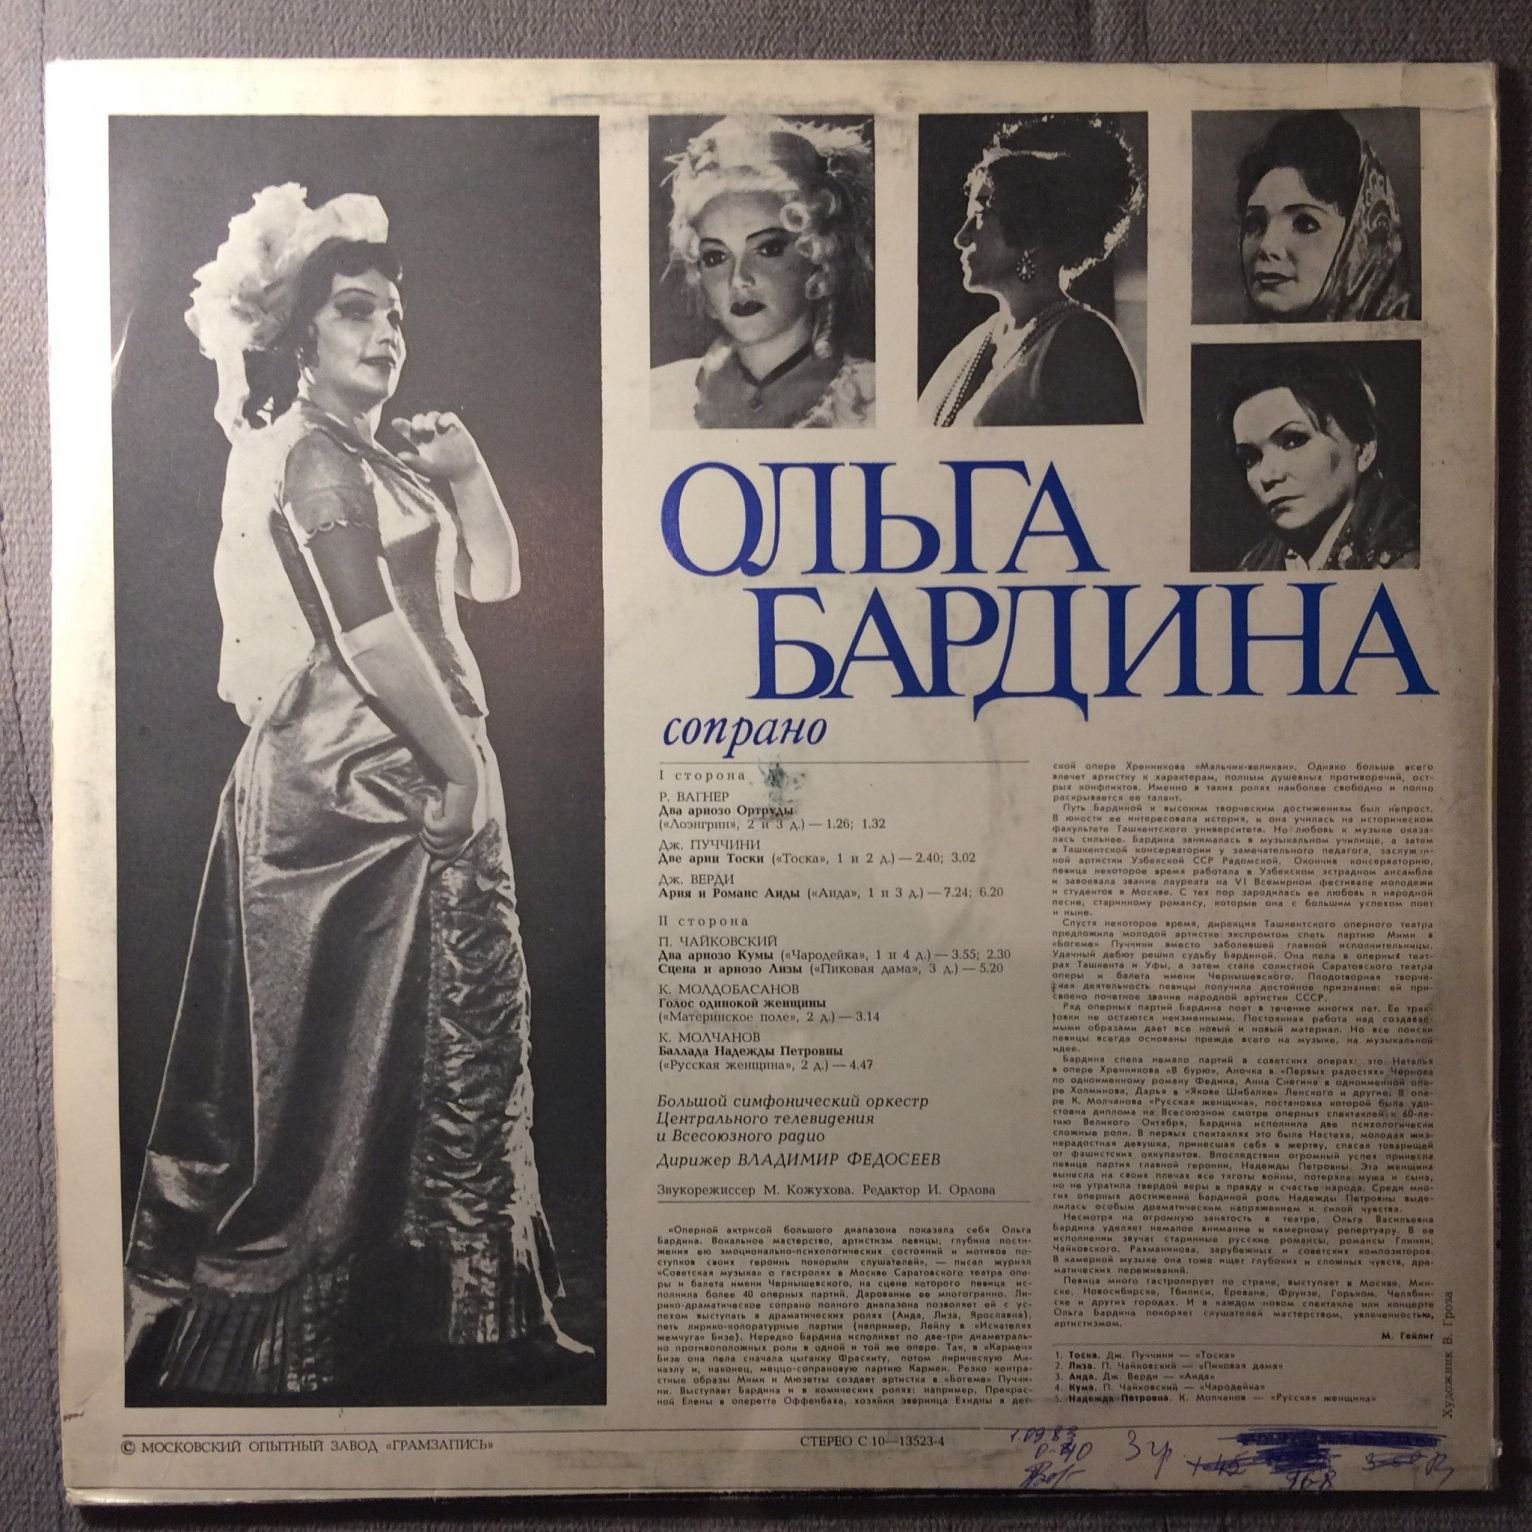 БАРДИНА Ольга (сопрано).